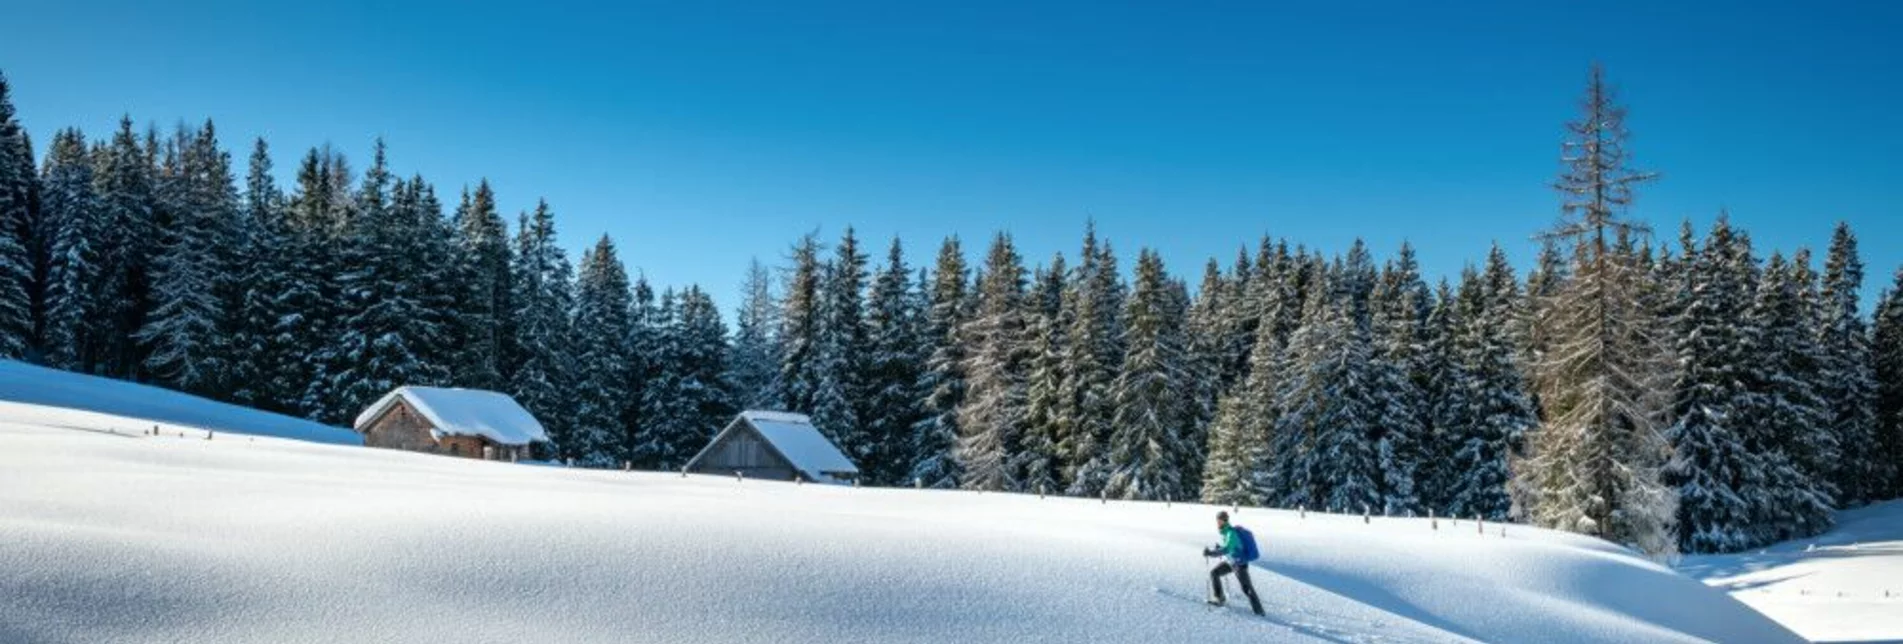 Ski Touring Ski tour Viehbergalm - Touren-Impression #1 | © Erlebnisregion Schladming-Dachstein